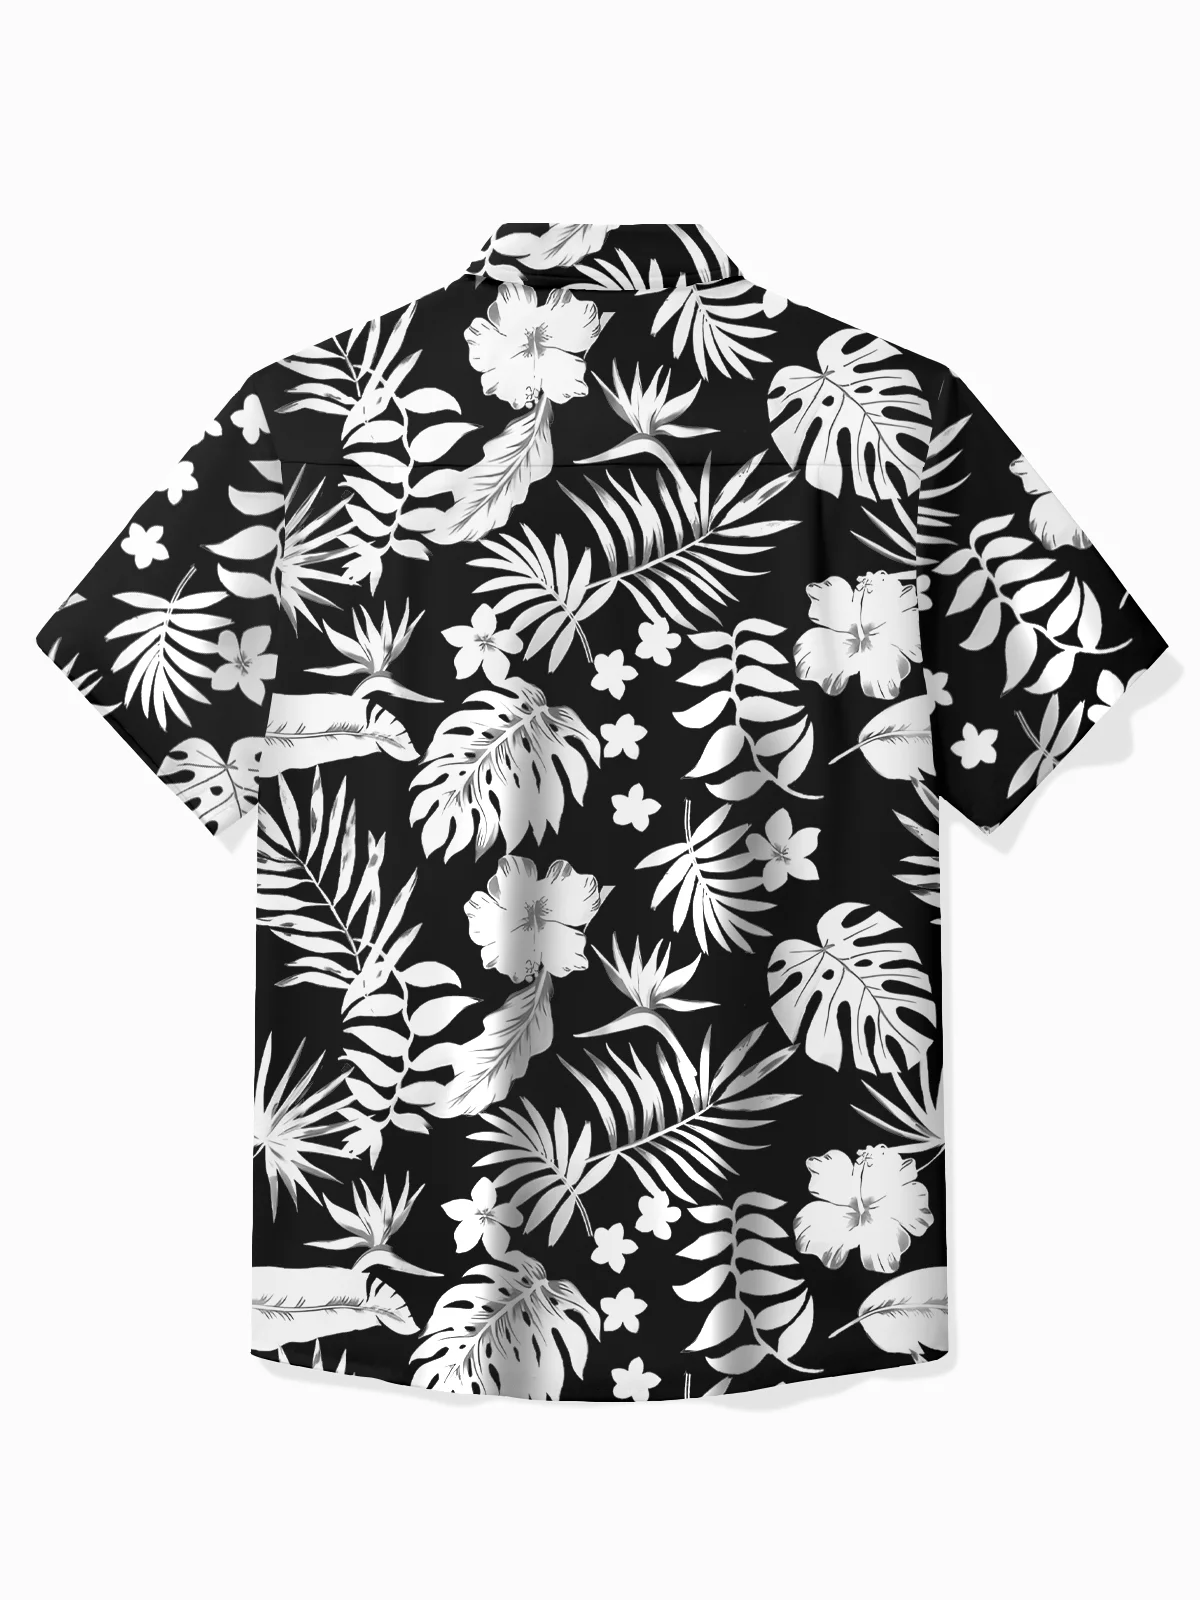 Royaura® Beach Vacation Men's Hawaiian Shirt Hibiscus Print Pocket Camping Shirt